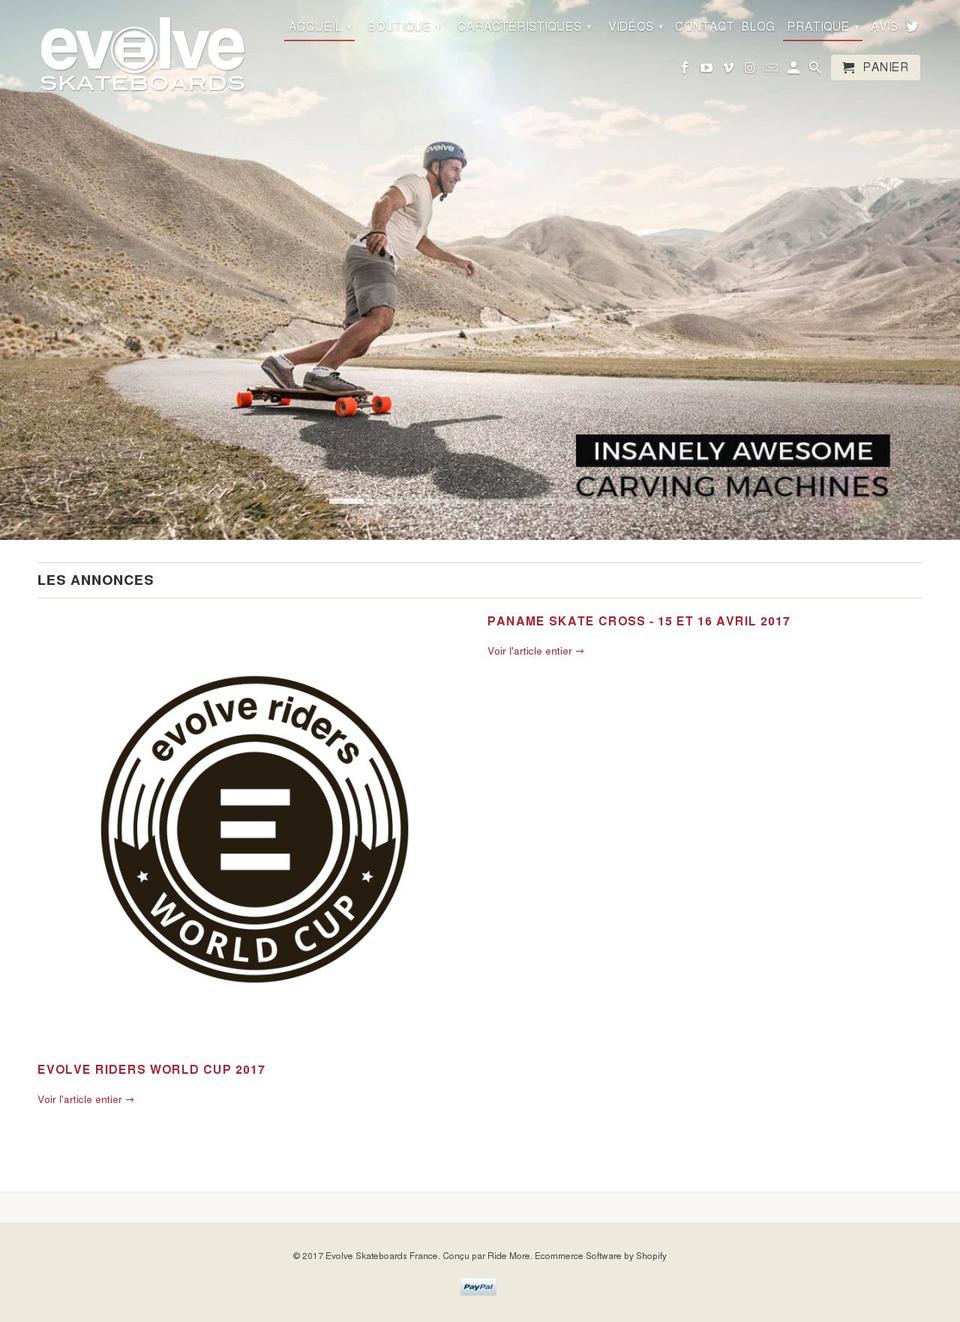 evolveskateboards.fr shopify website screenshot